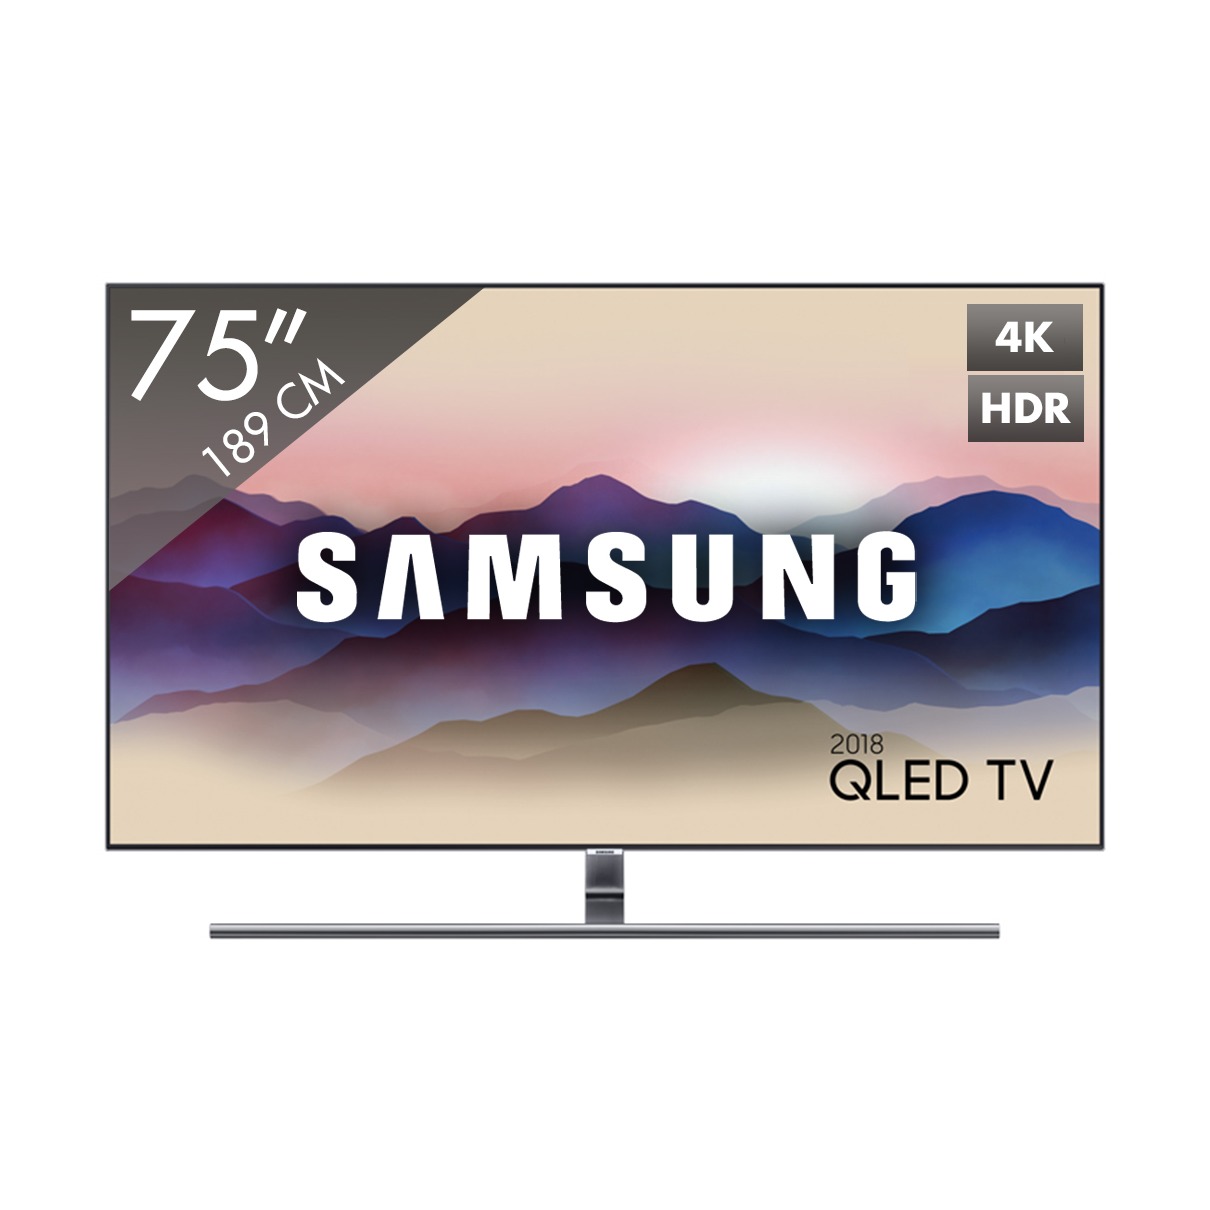 Samsung QE75Q7F QLED TV 2018